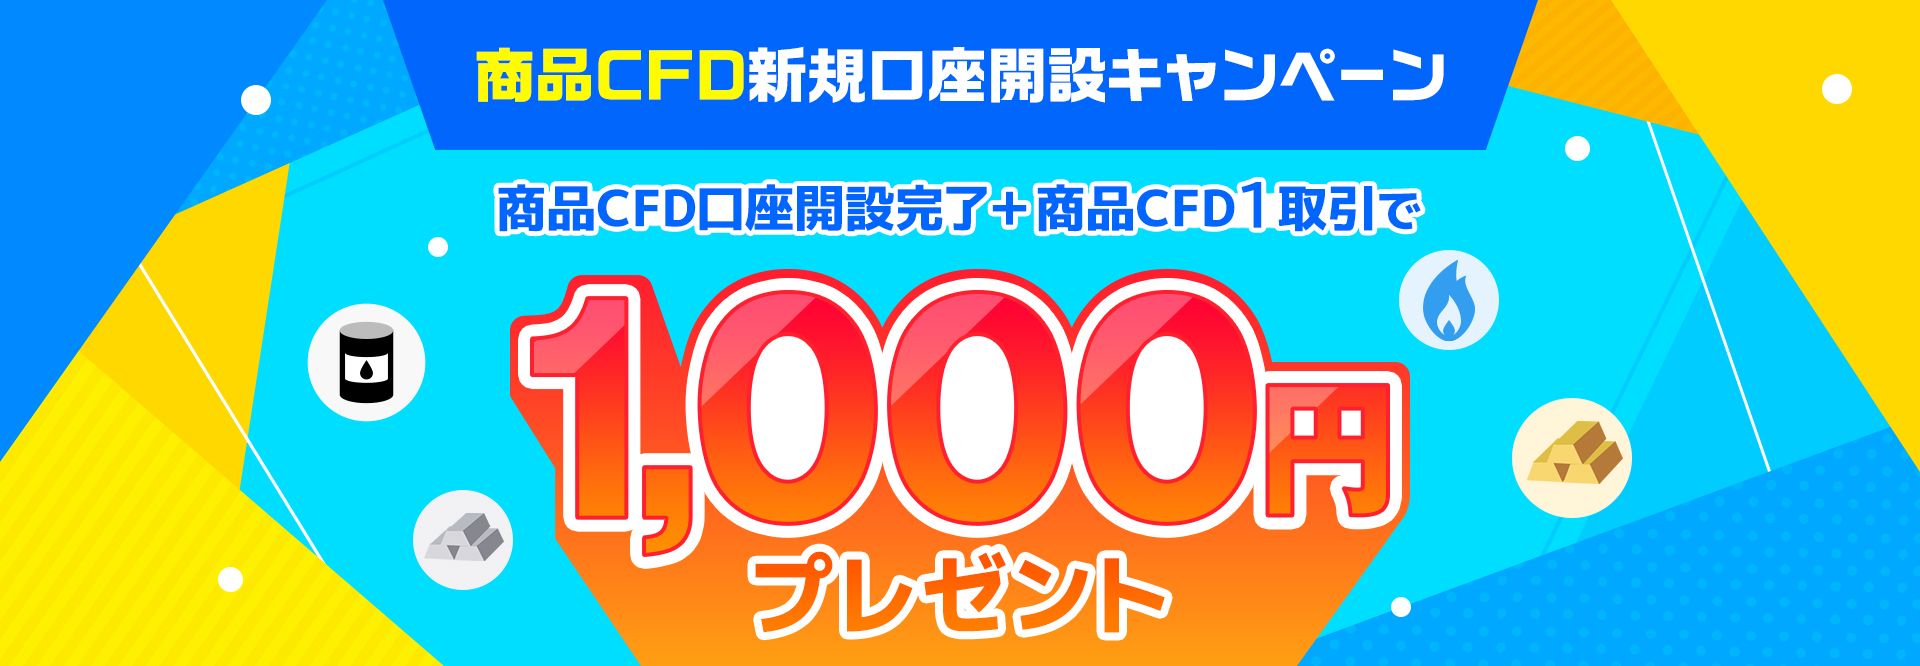 商品CFD新規口座開設キャンペーン 